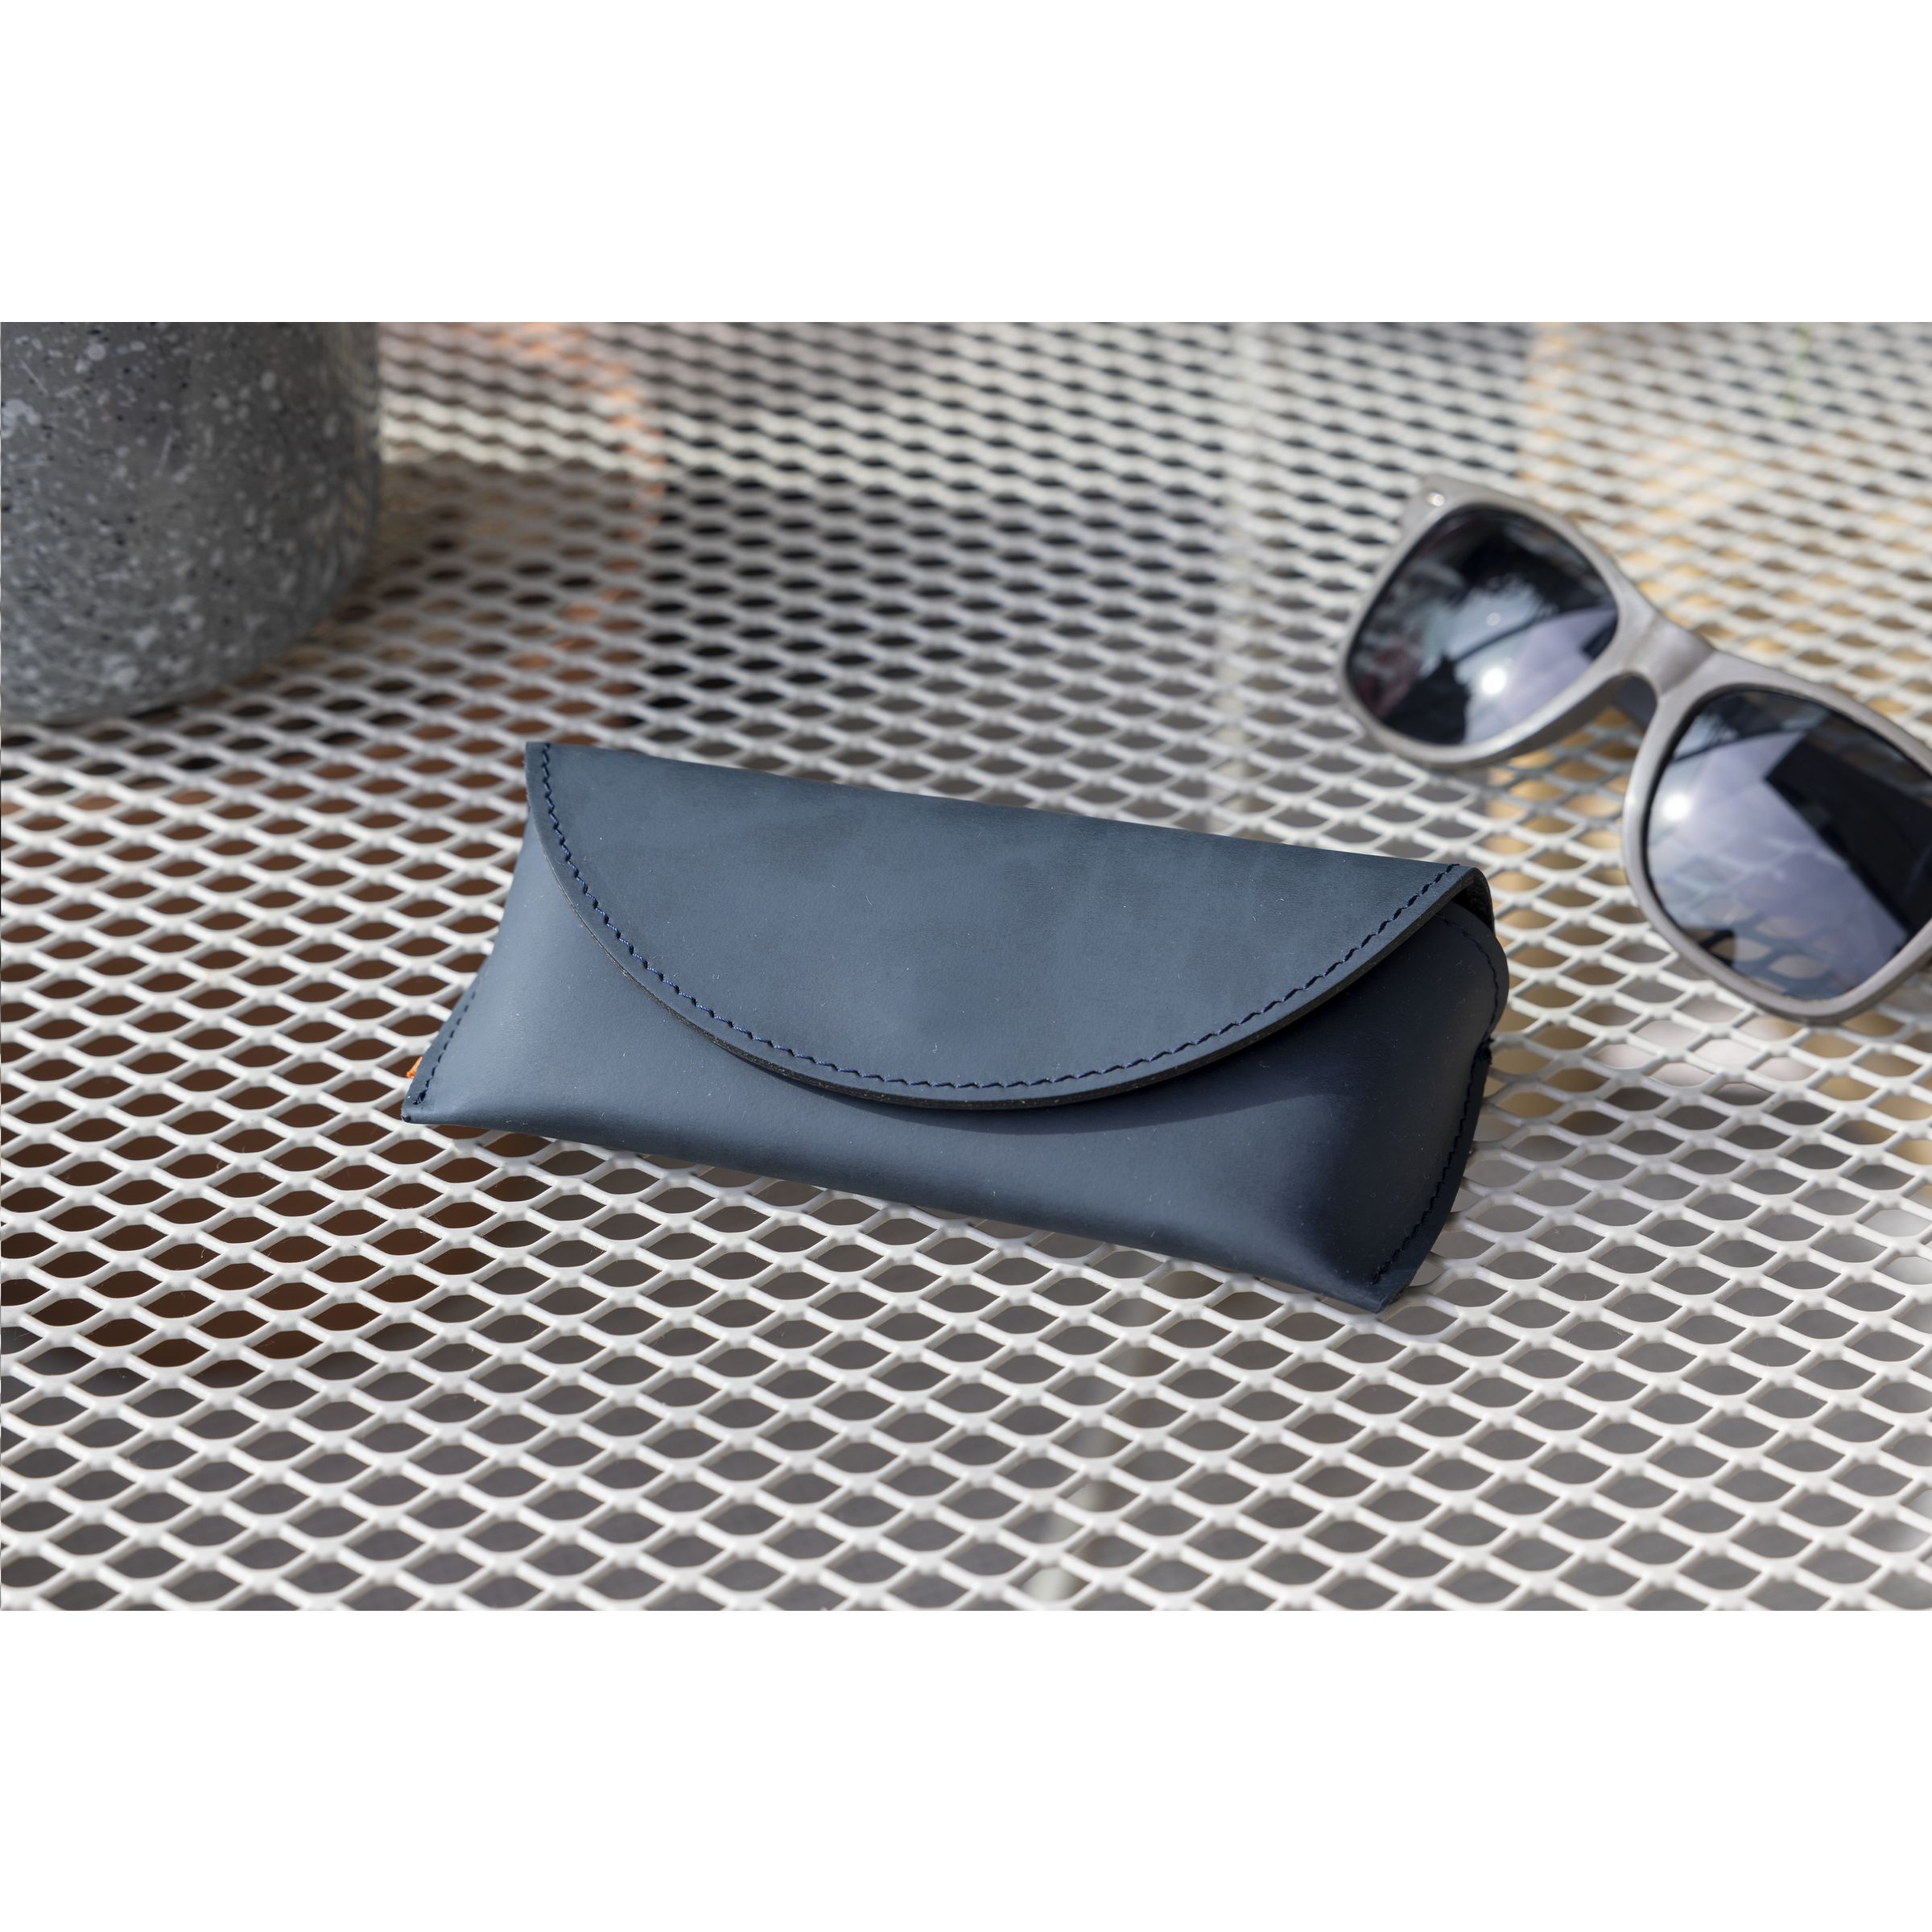 Recycled Leather Sunglasses Pouch Brillen-Etui als Werbemittel kaufen -  Farbe: Dunkelblau